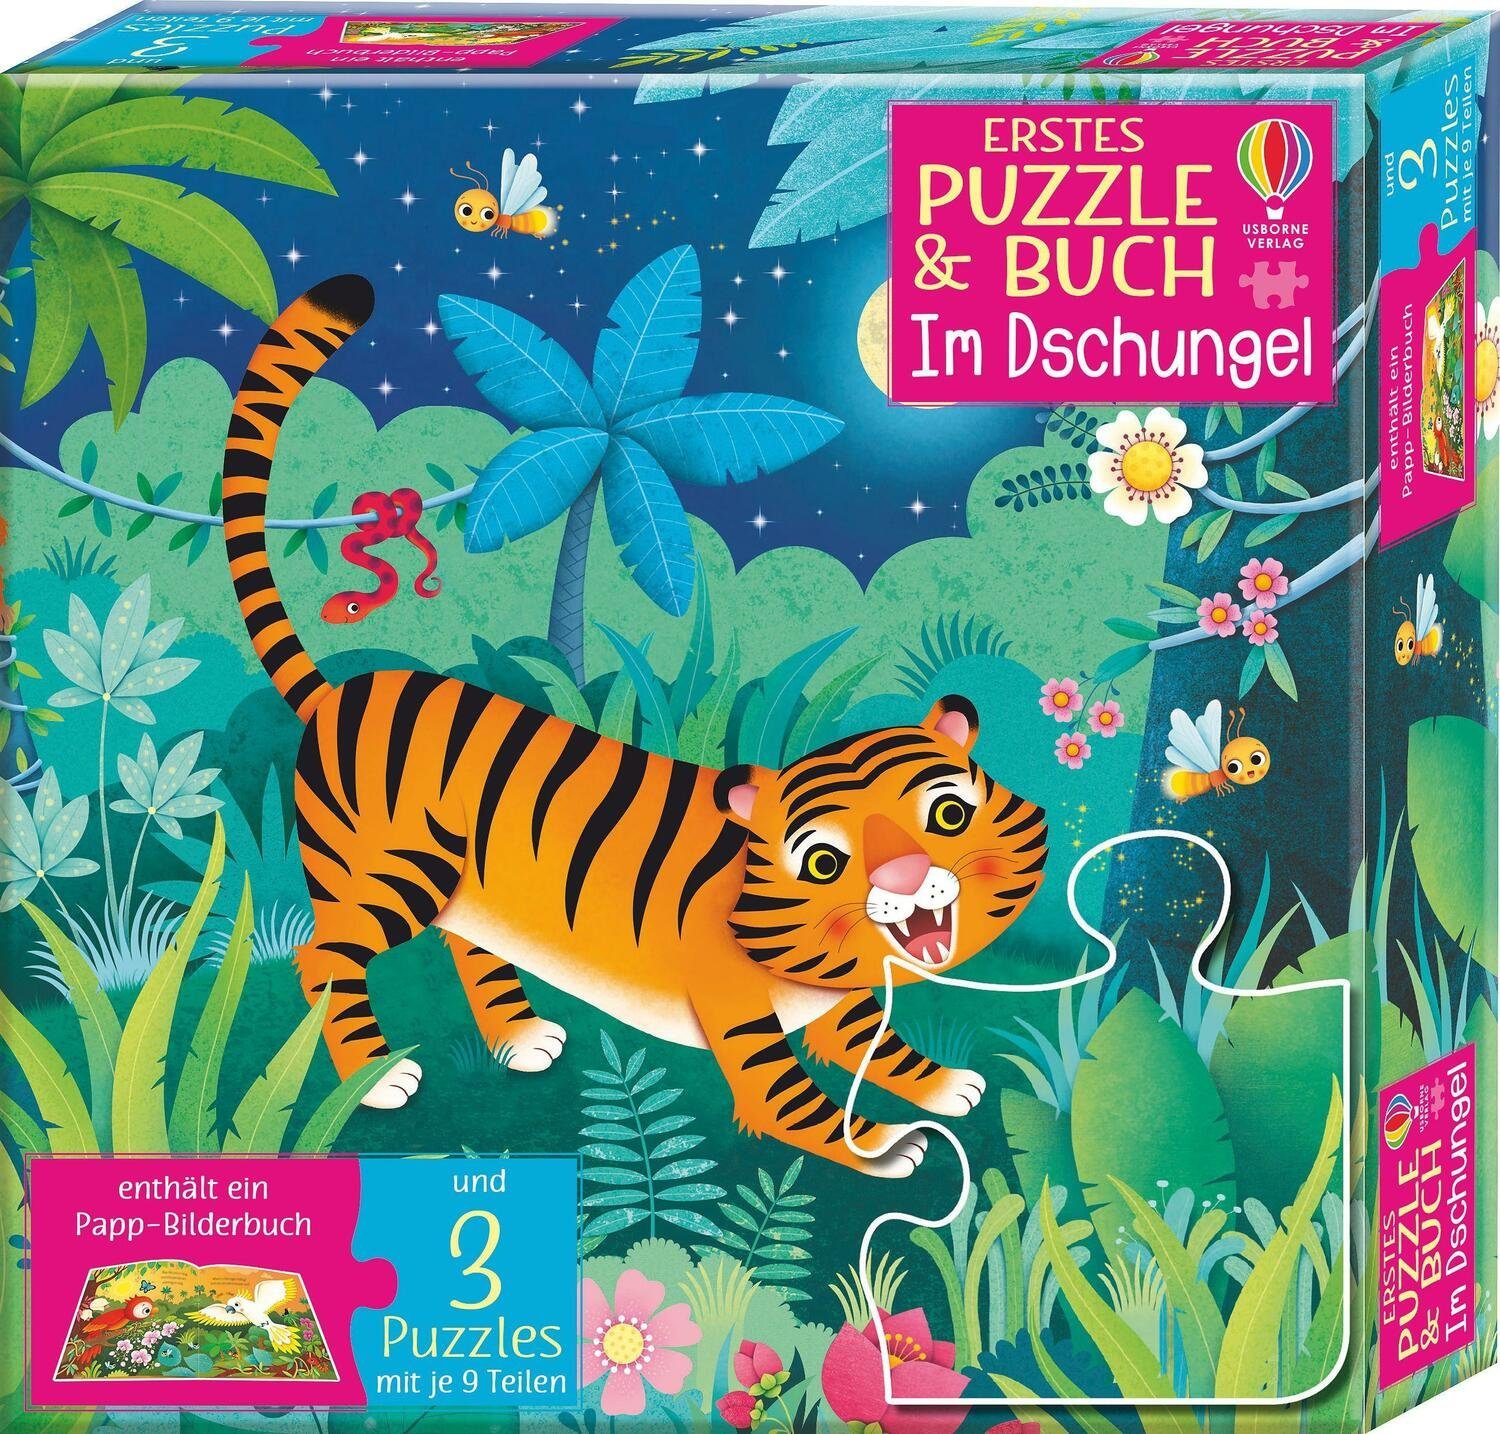 Usborne Verlag Puzzleteile Im Dschungel, Buch: Puzzle Puzzle & Erstes